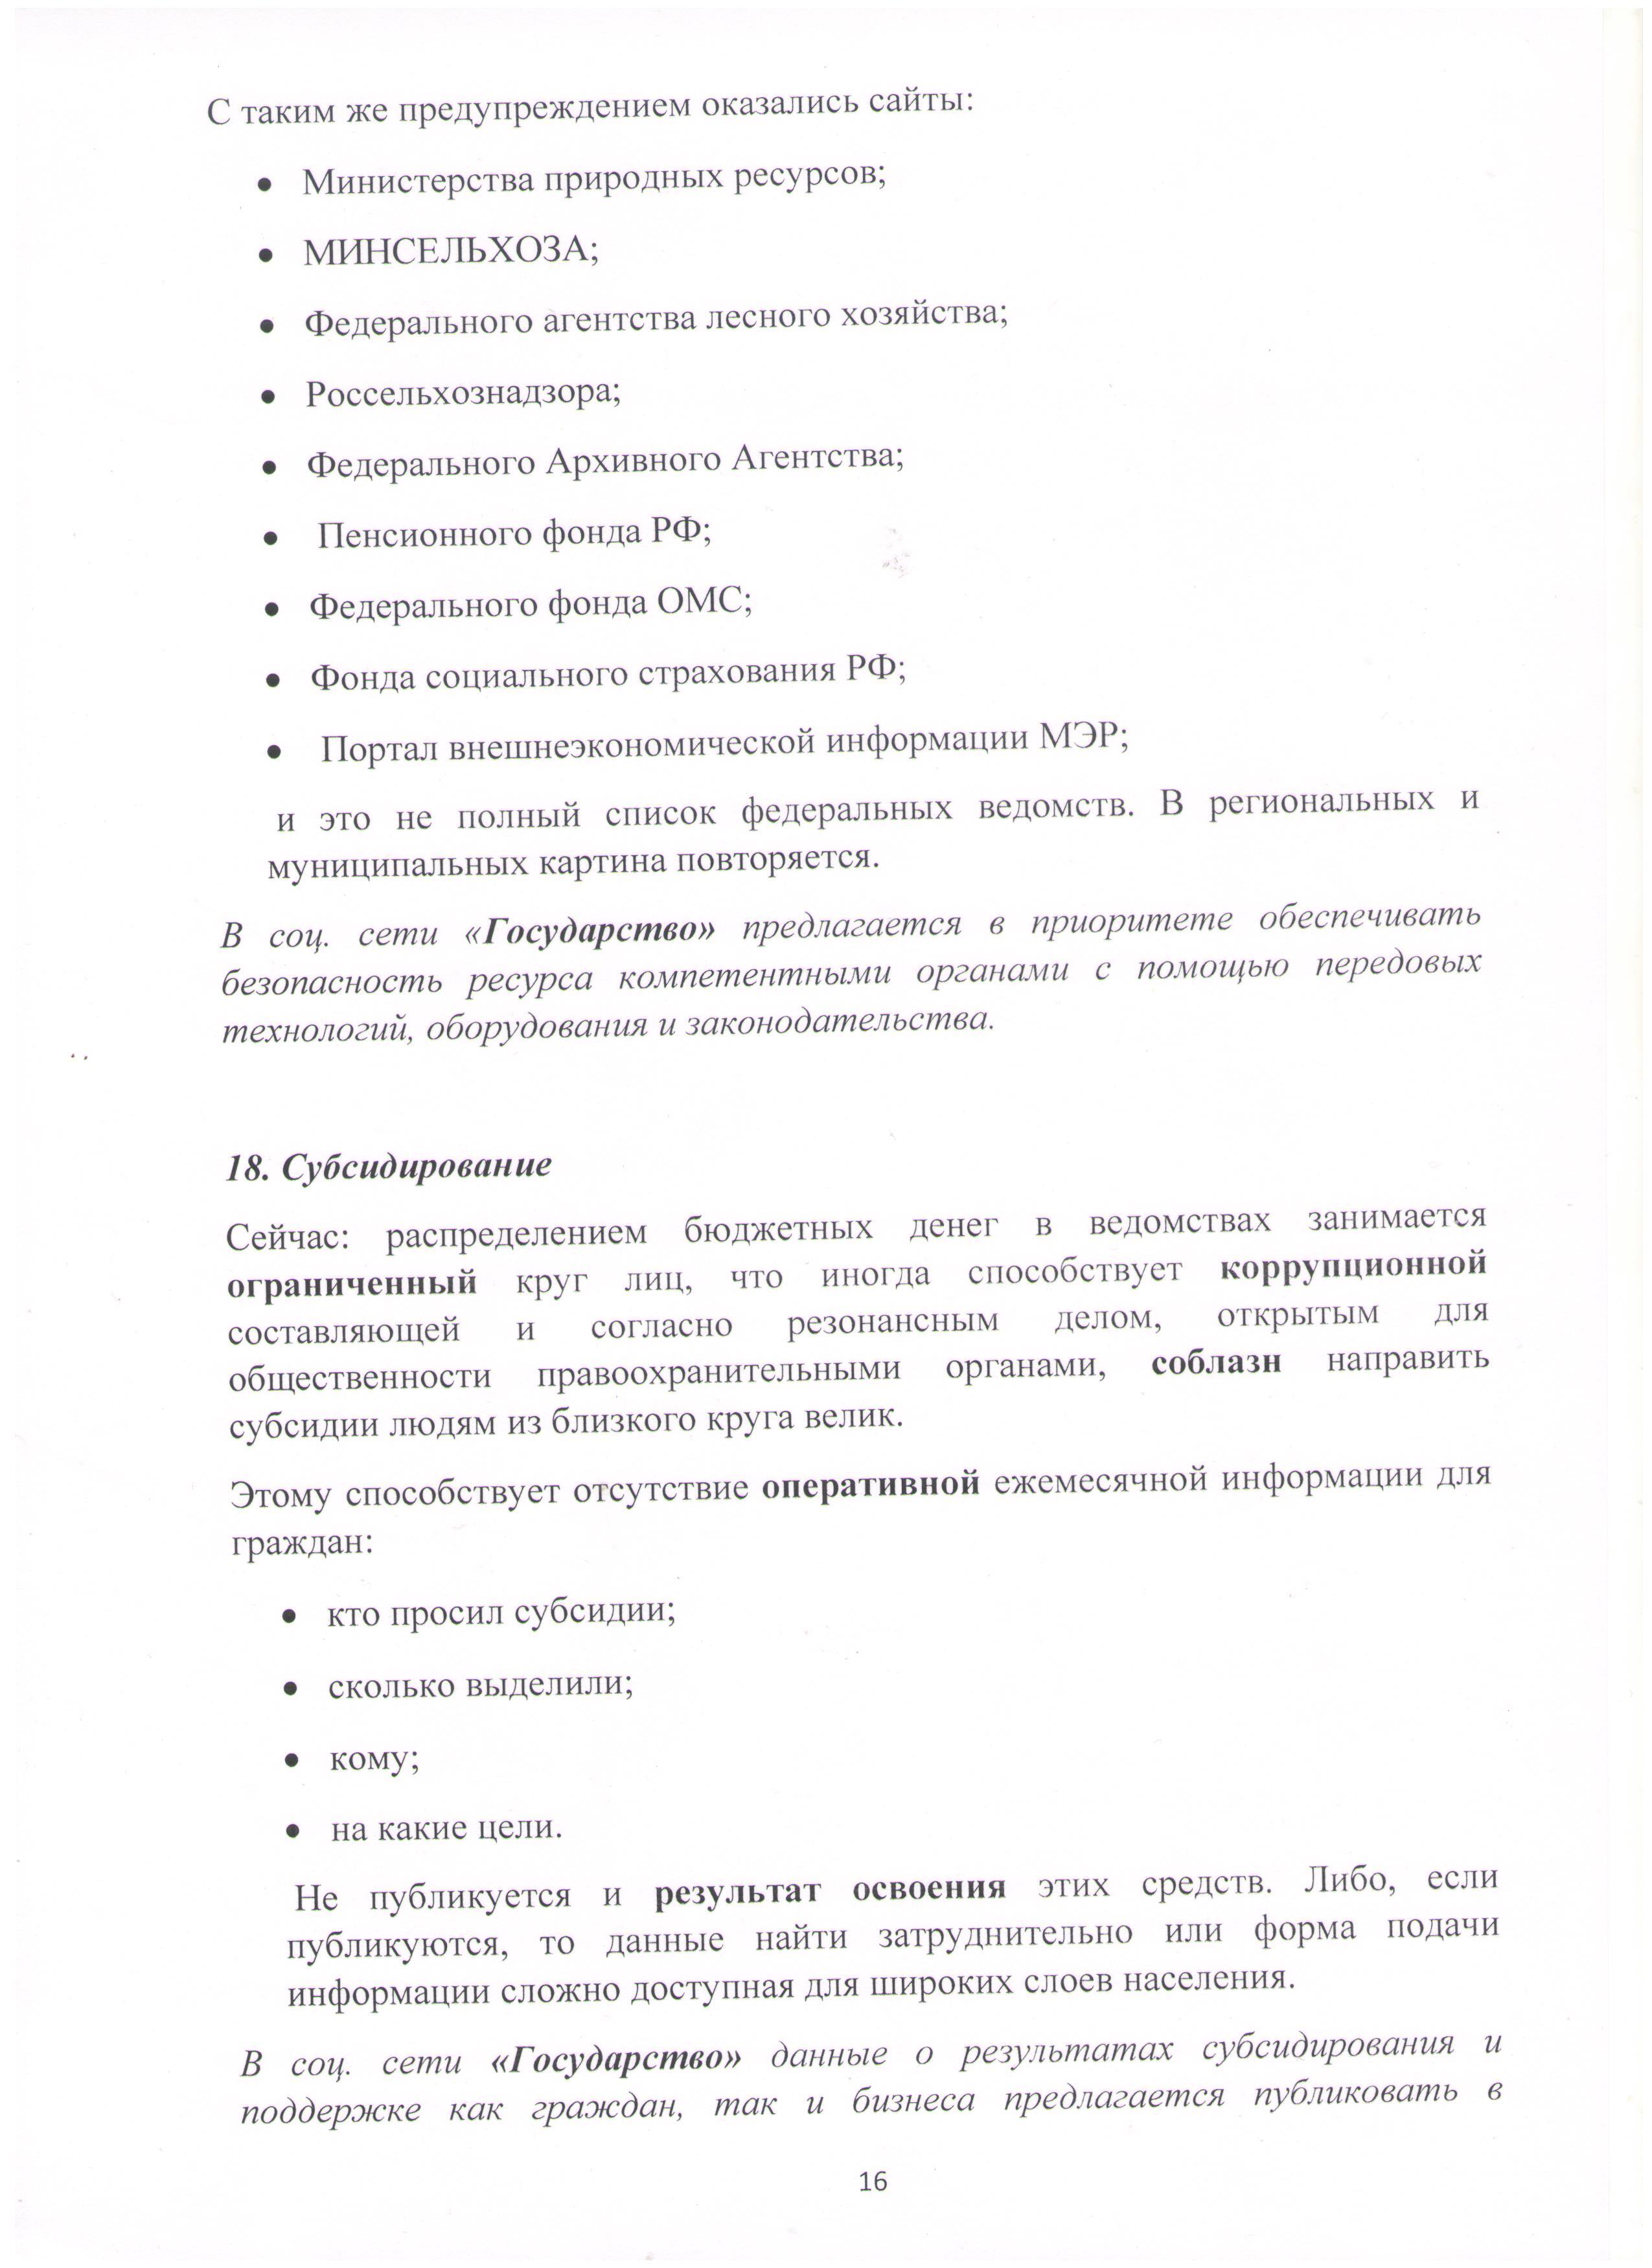 Открытое письмо Президенту РФ Лист 16